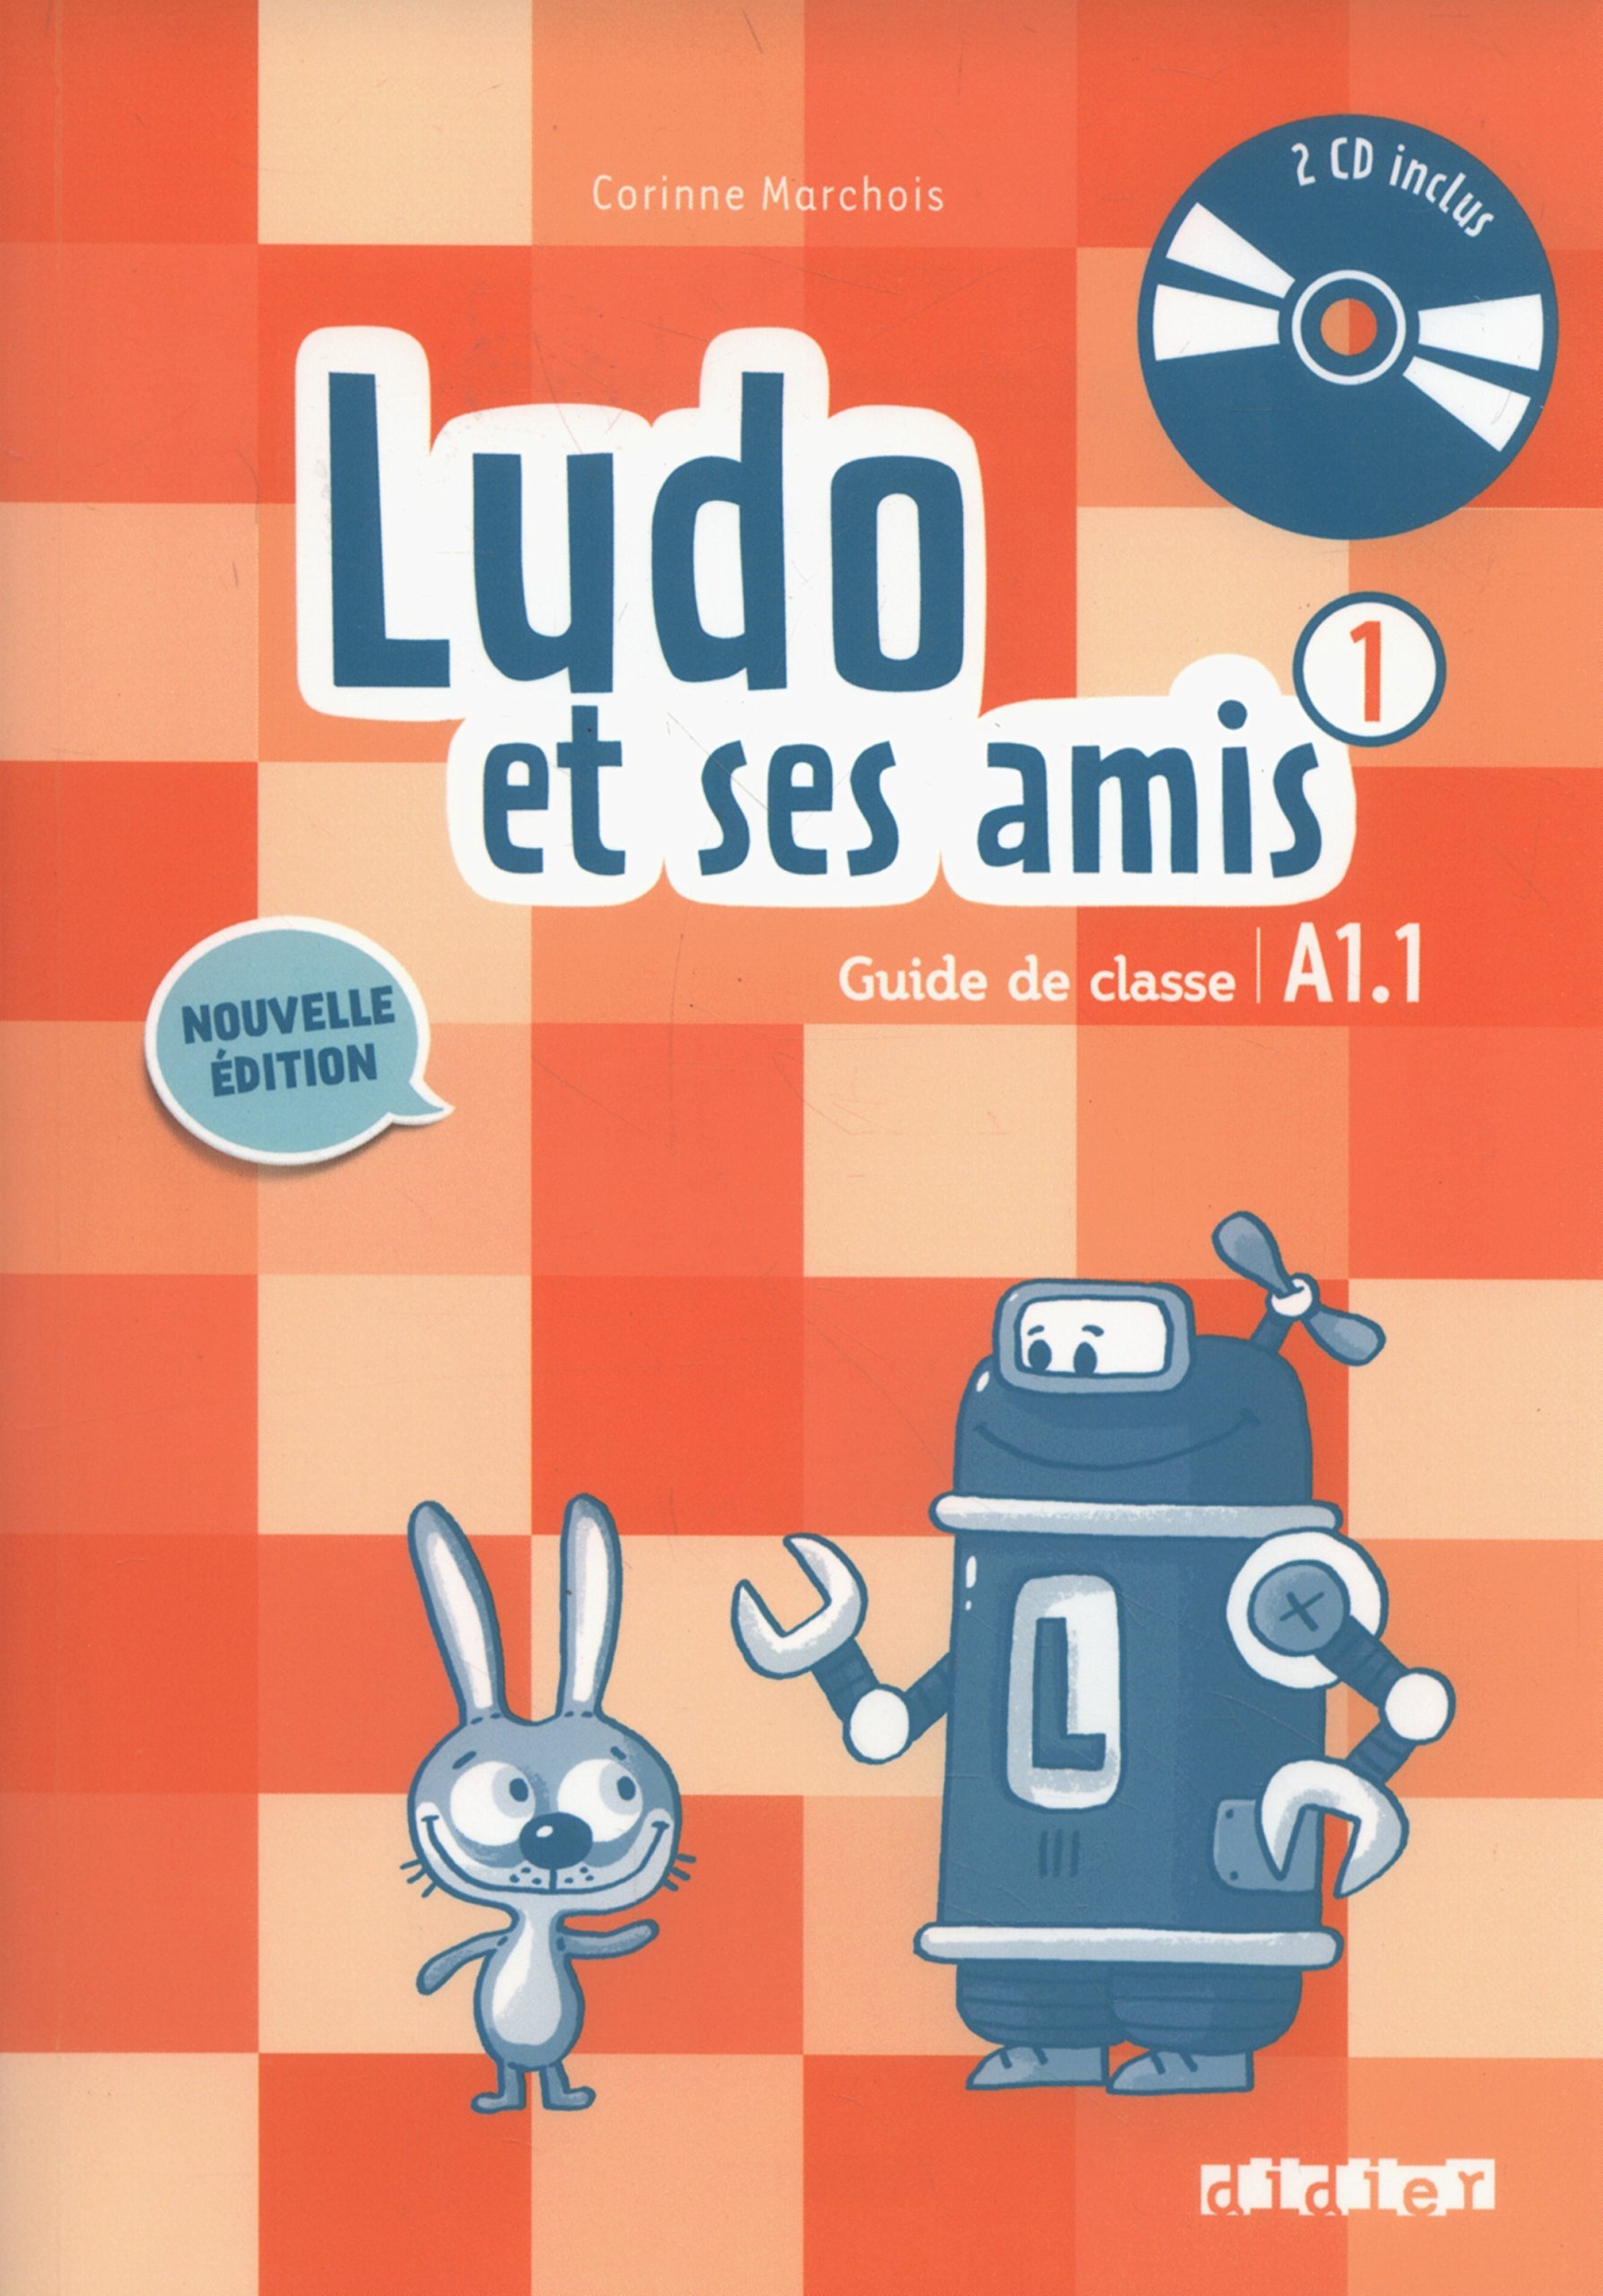 Ludo et ses amis (Nouvelle Edition) 1 Guide de classe + Audio CD / Книга для учителя